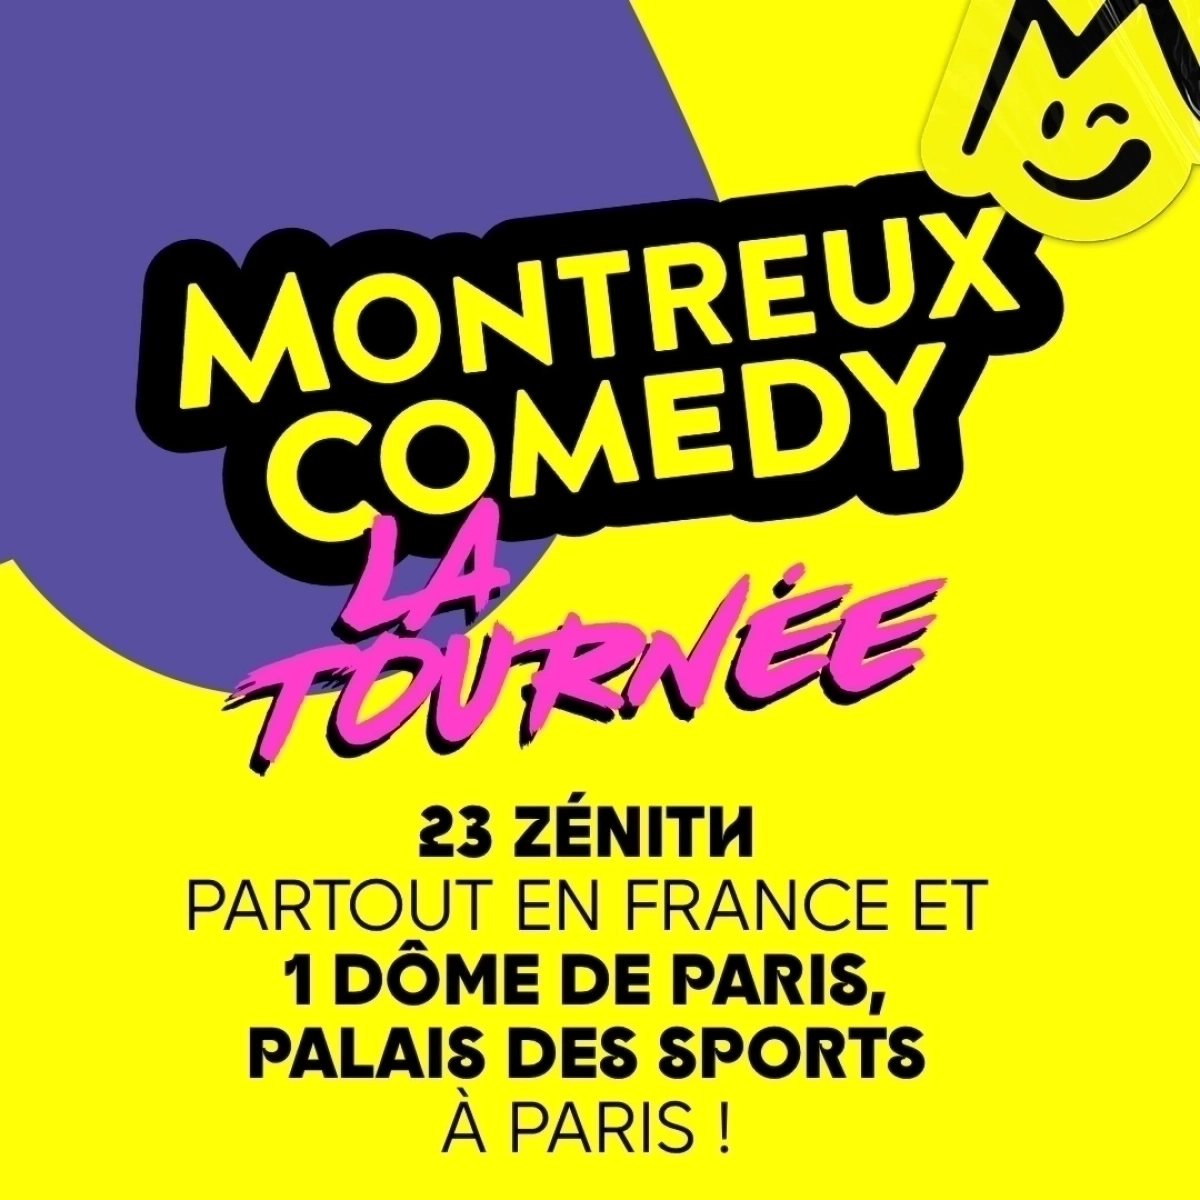 Montreux Comedy - La Tournée at Narbonne Arena Tickets